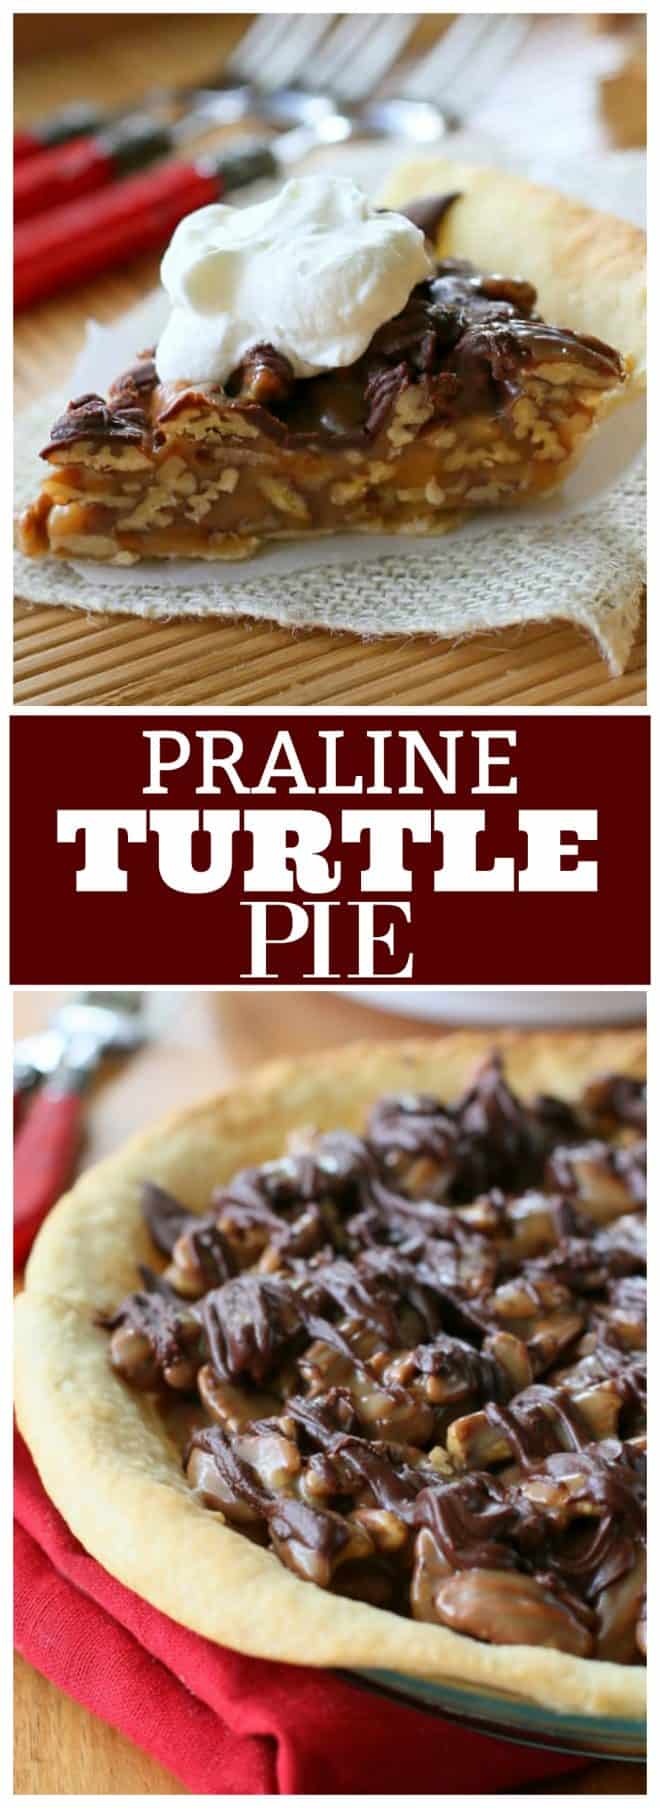 praline turtle pie